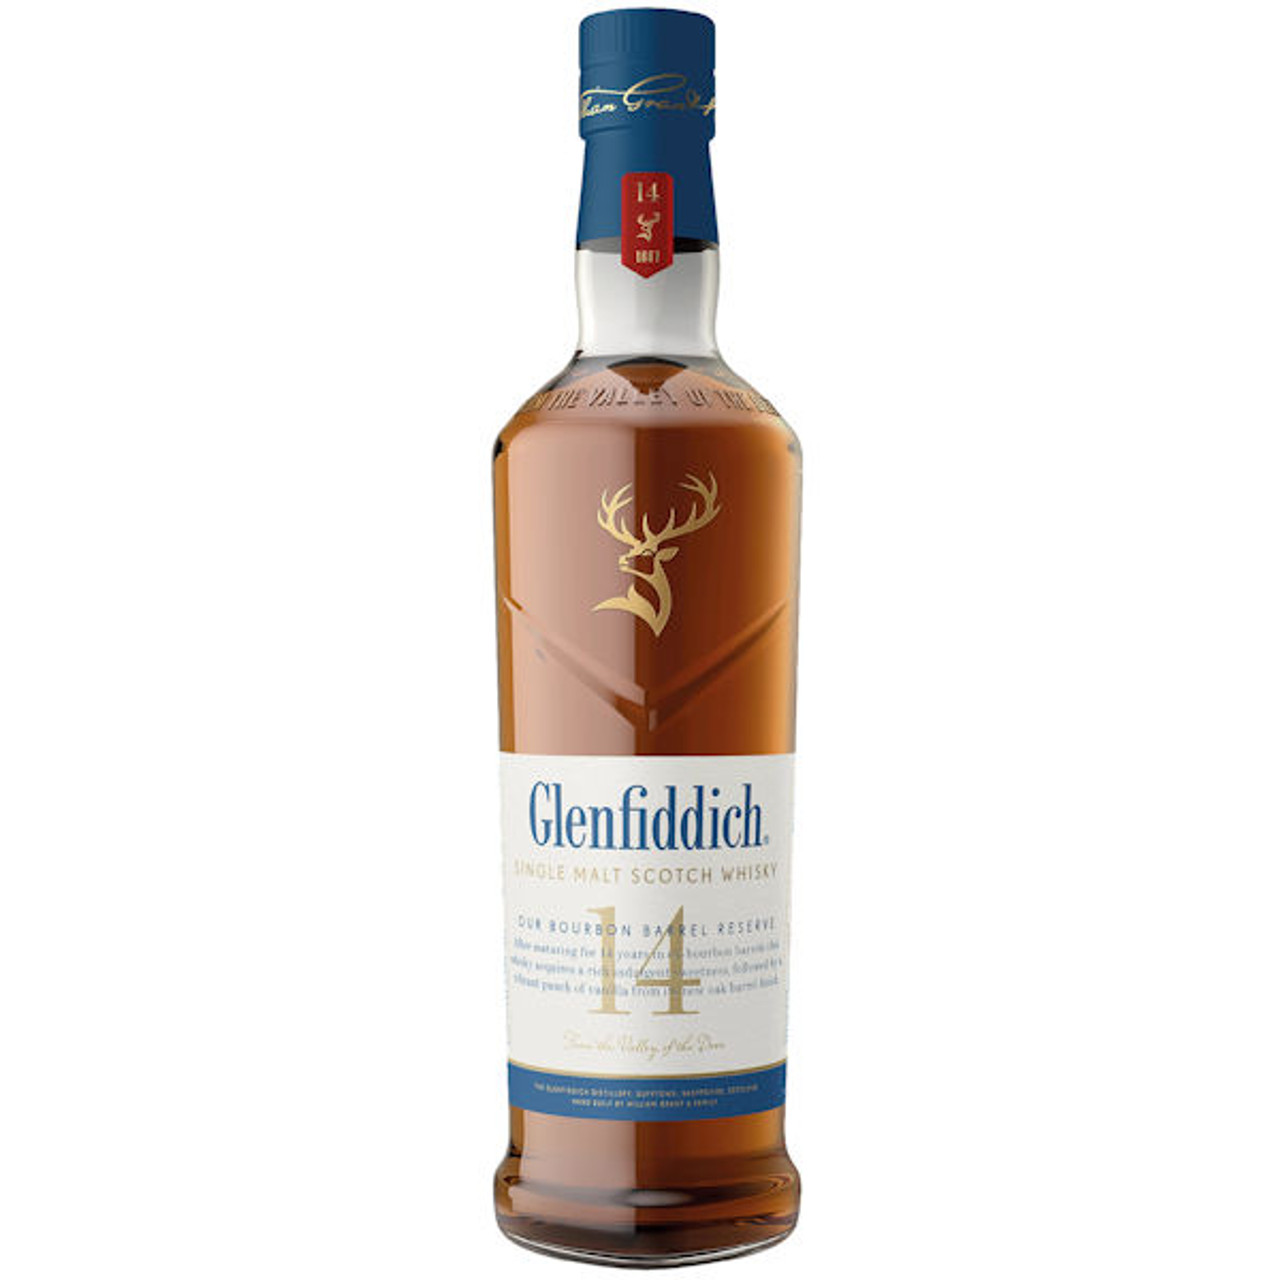 Glenfiddich 14 Year Single Malt Scotch Whisky 750mL